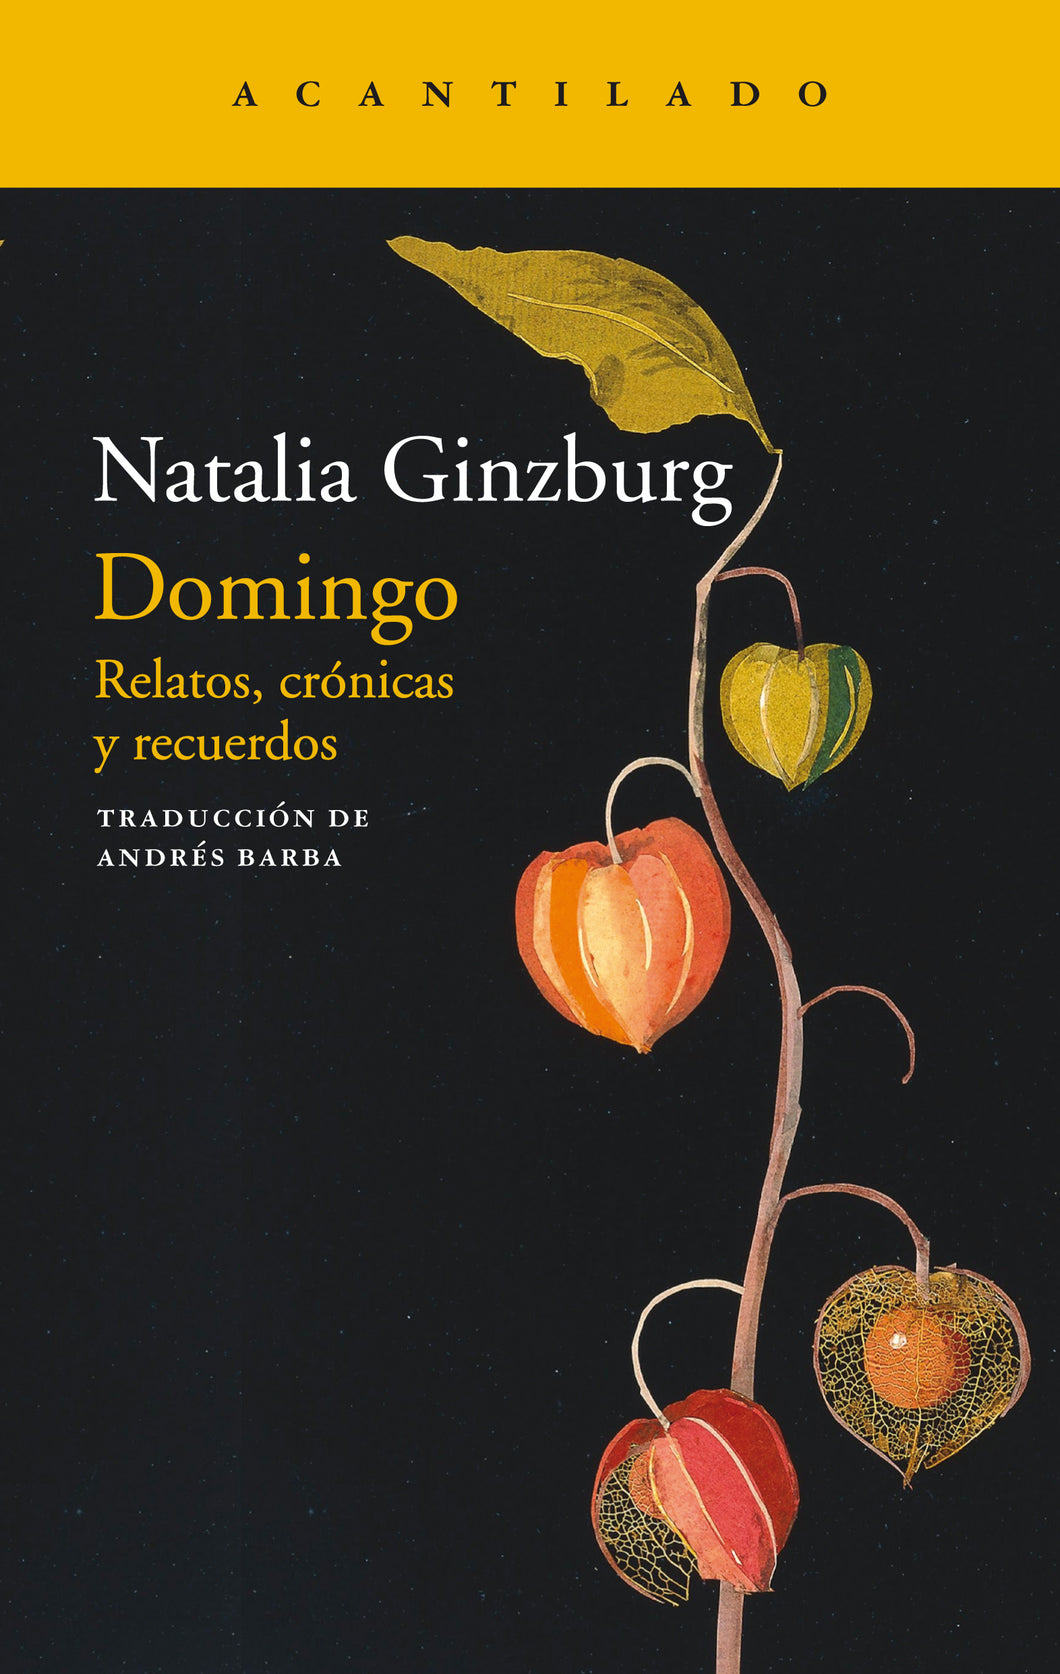 DOMINGO - Natalia Ginzburg